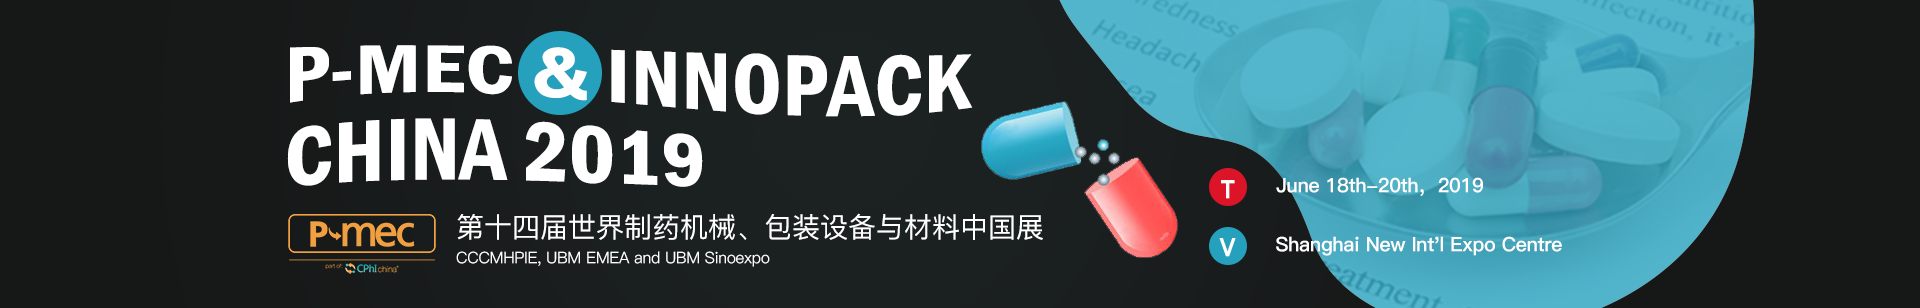 P-MEC & InnoPack China 2019